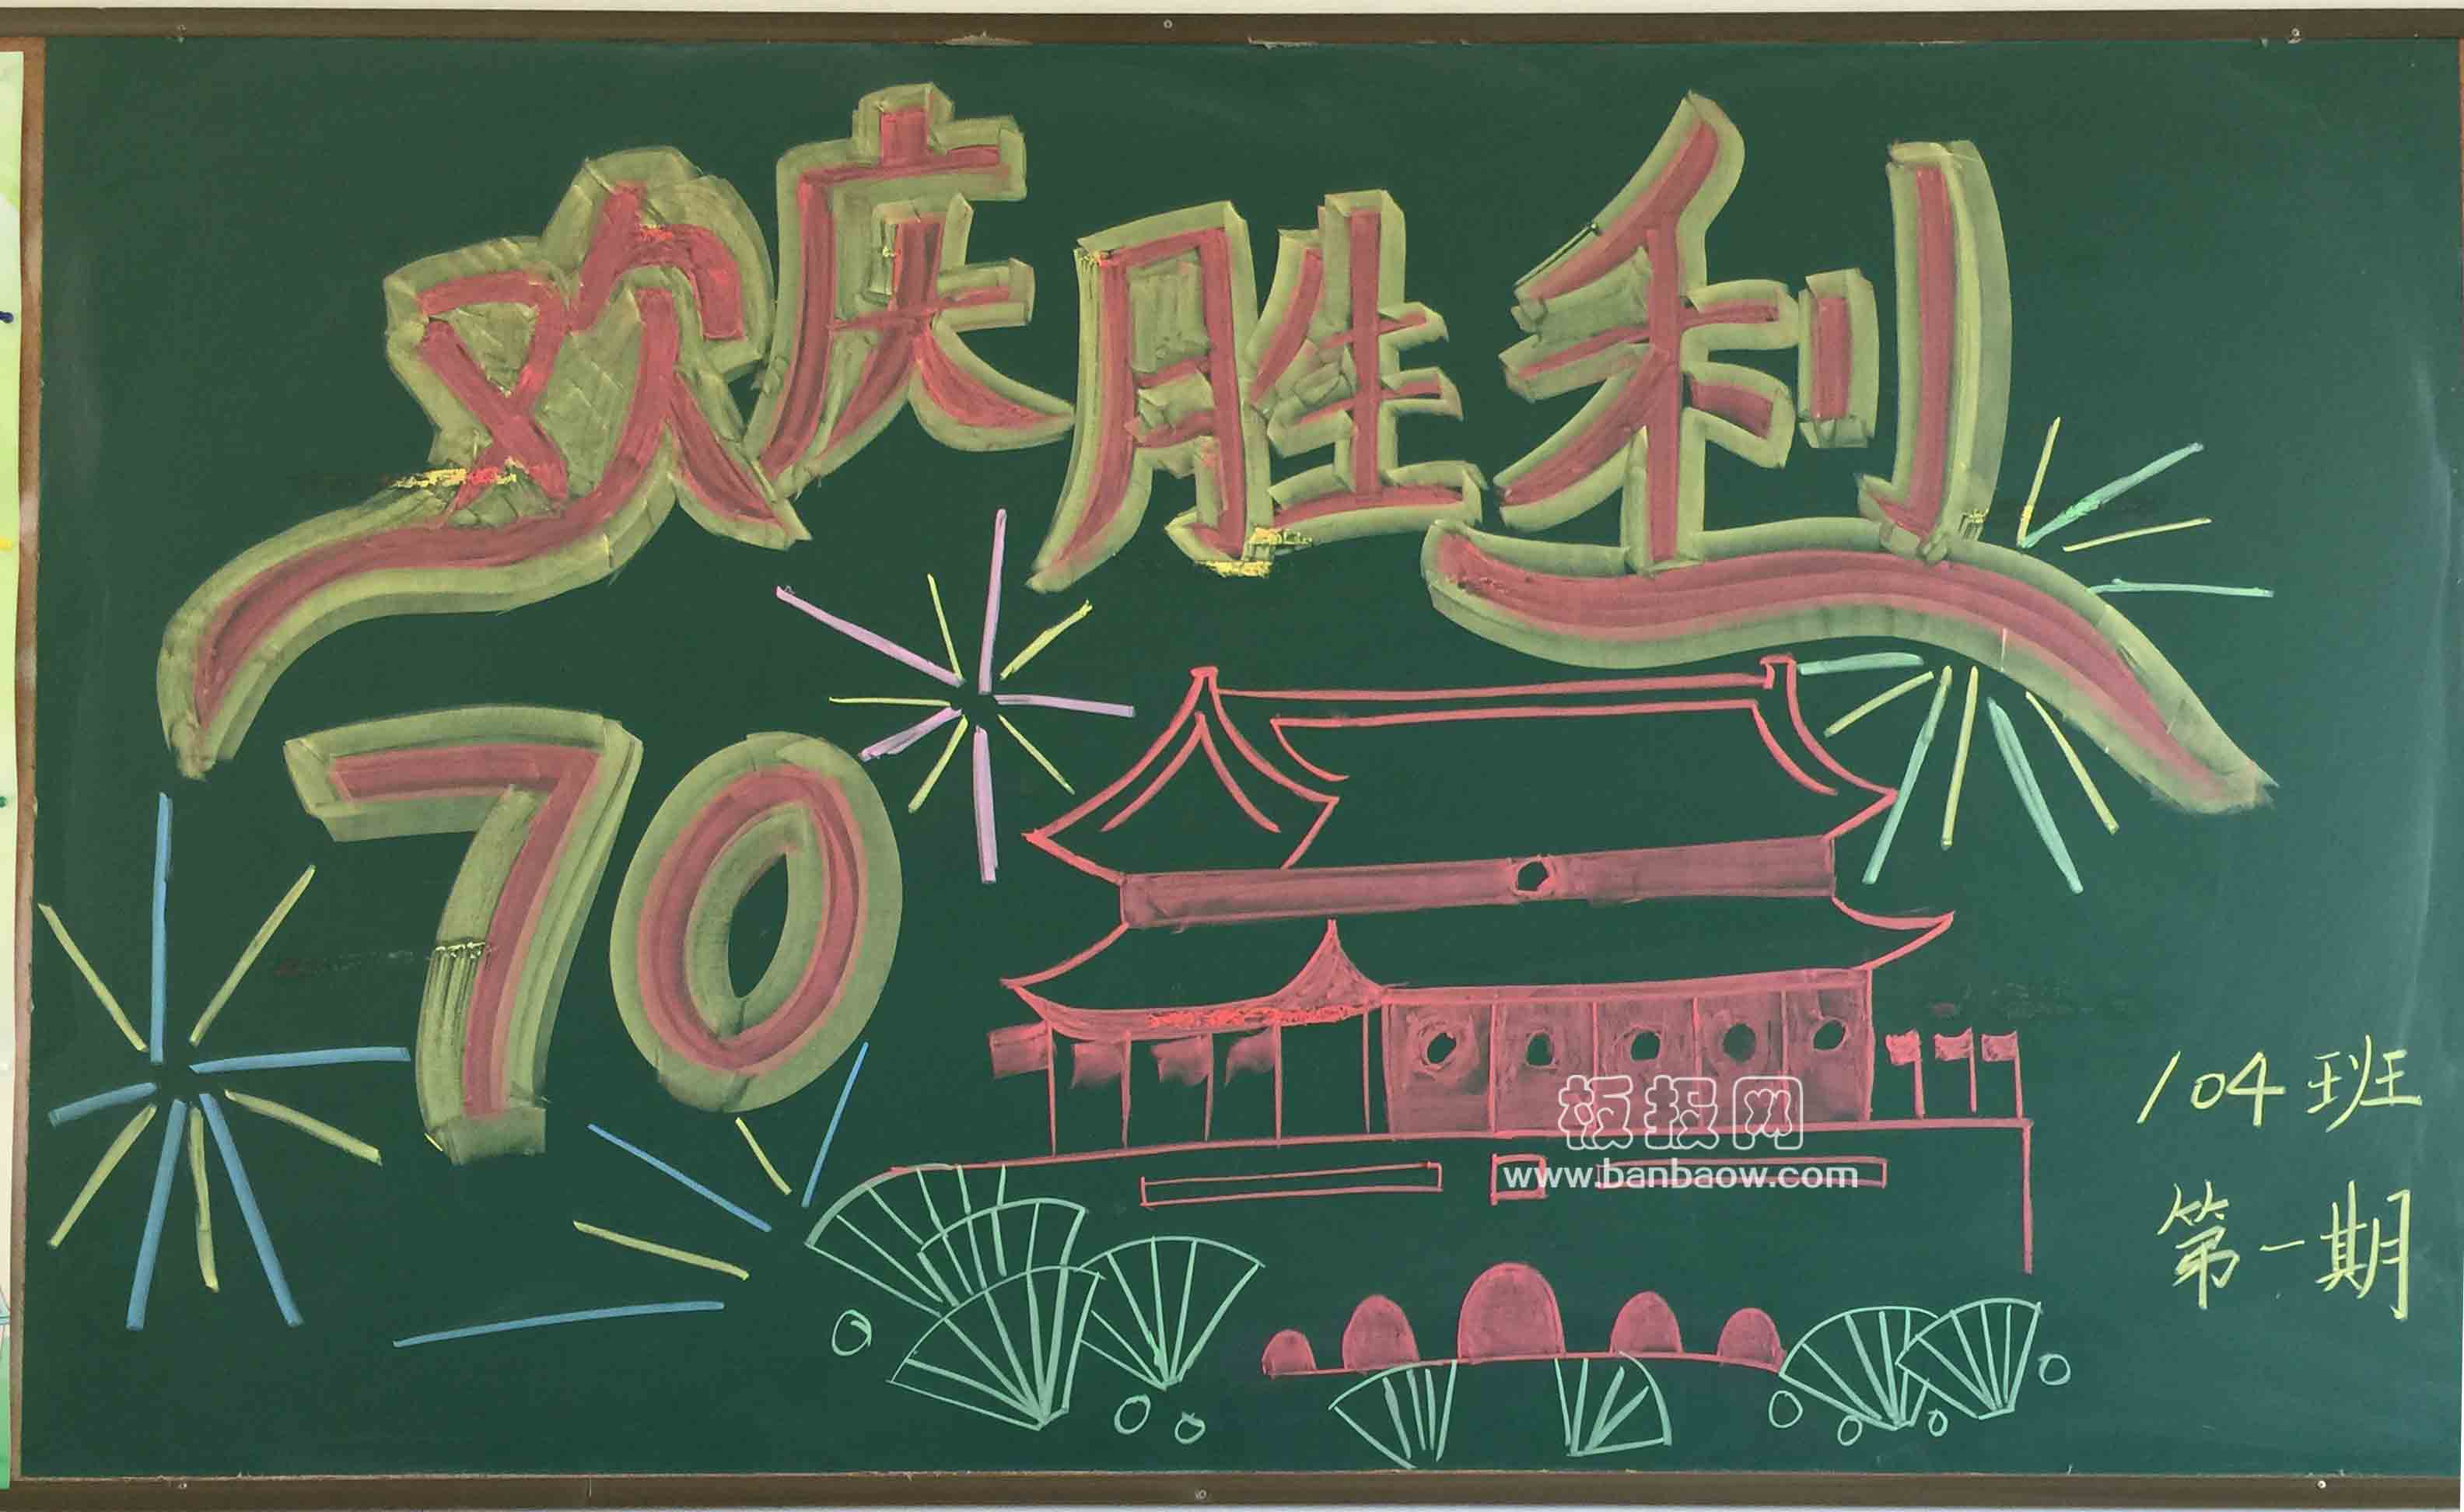 欢庆胜利 抗战70周年庆黑板报